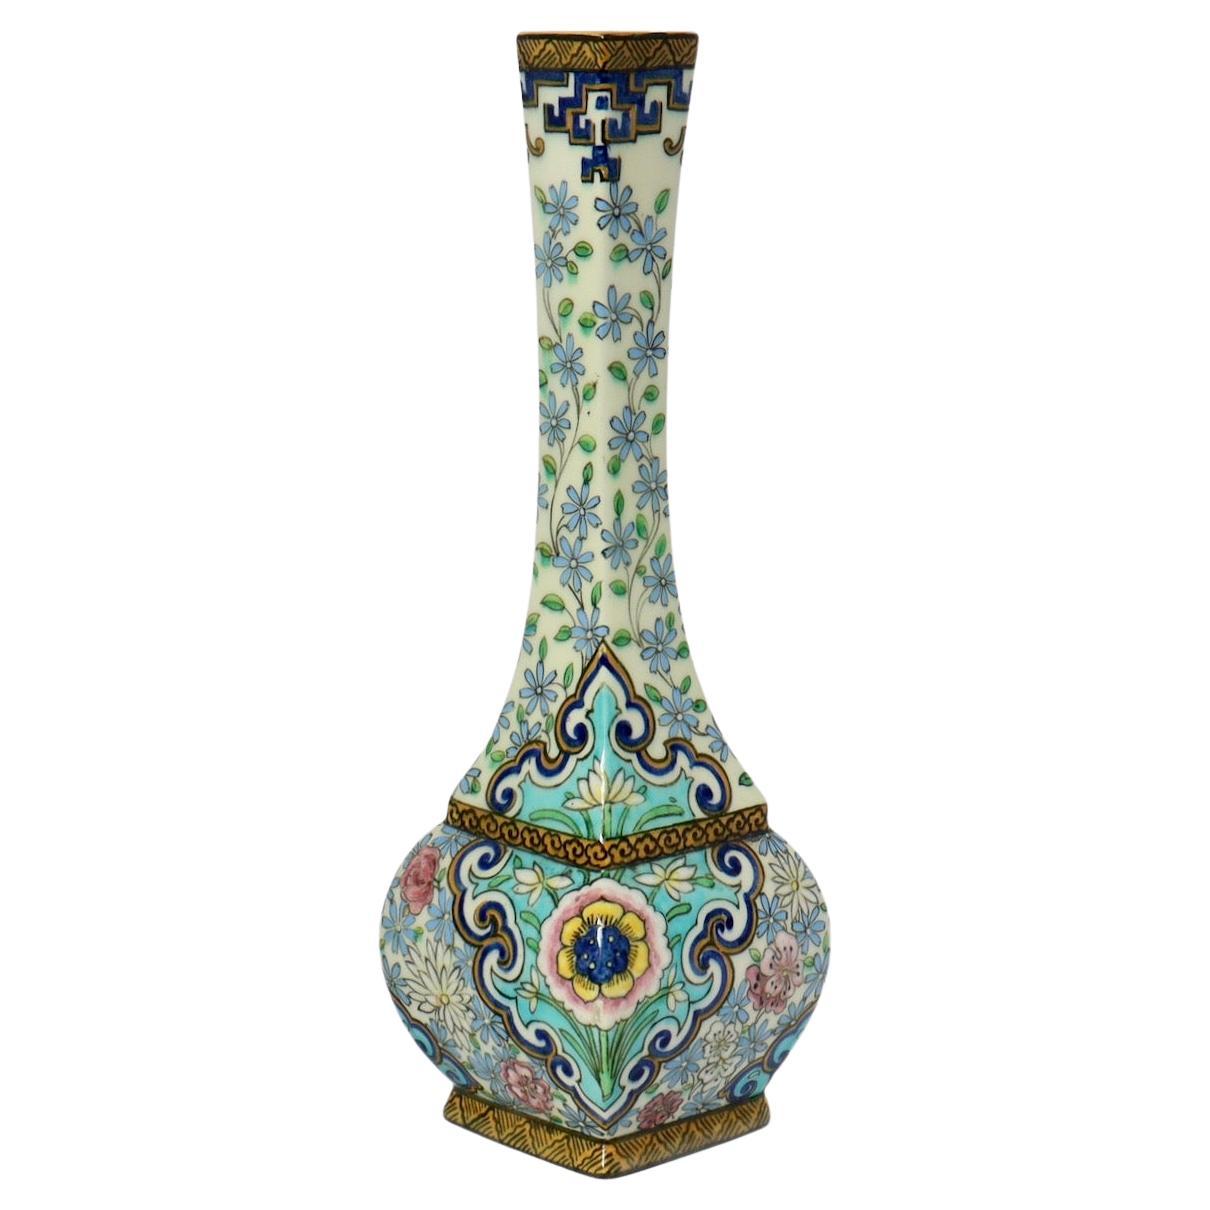 Soliflore-Vase aus emaillierter Fayence von Thodore Deck (1823-1891), um 1875